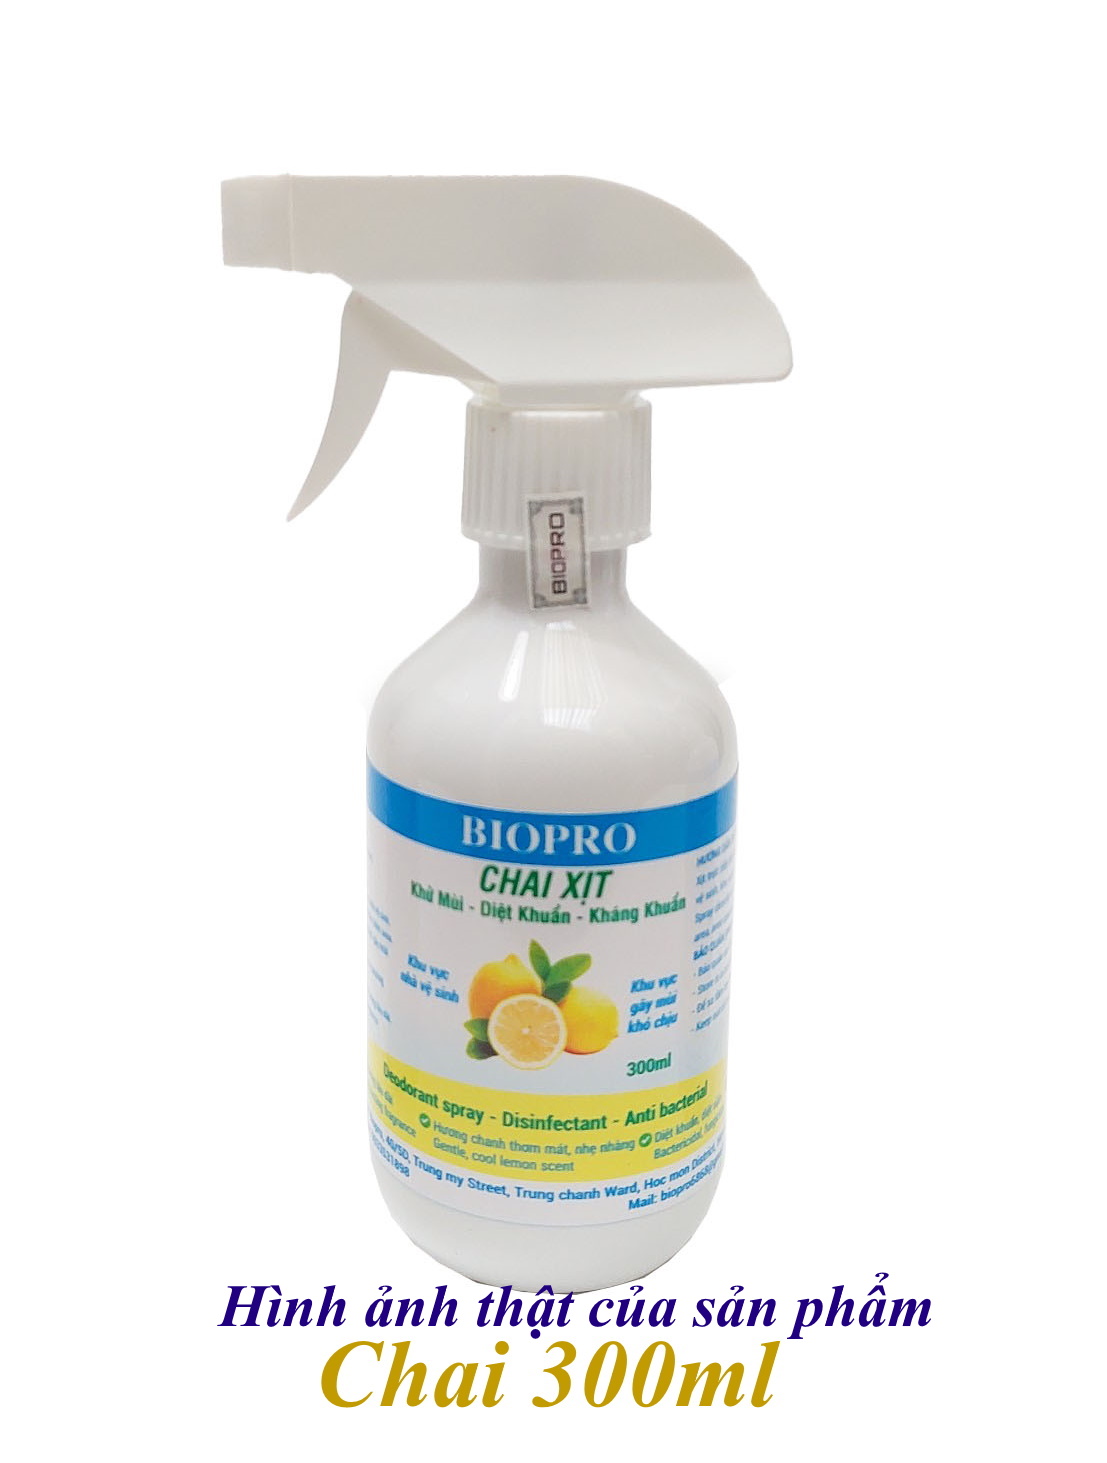 Chai xịt Biopro 300ml khử mùi diệt khuẩn kháng khuẩn Khu vực gây mùi khó chịu Khu vực nhà vệ sinh Hương chanh thơm mát